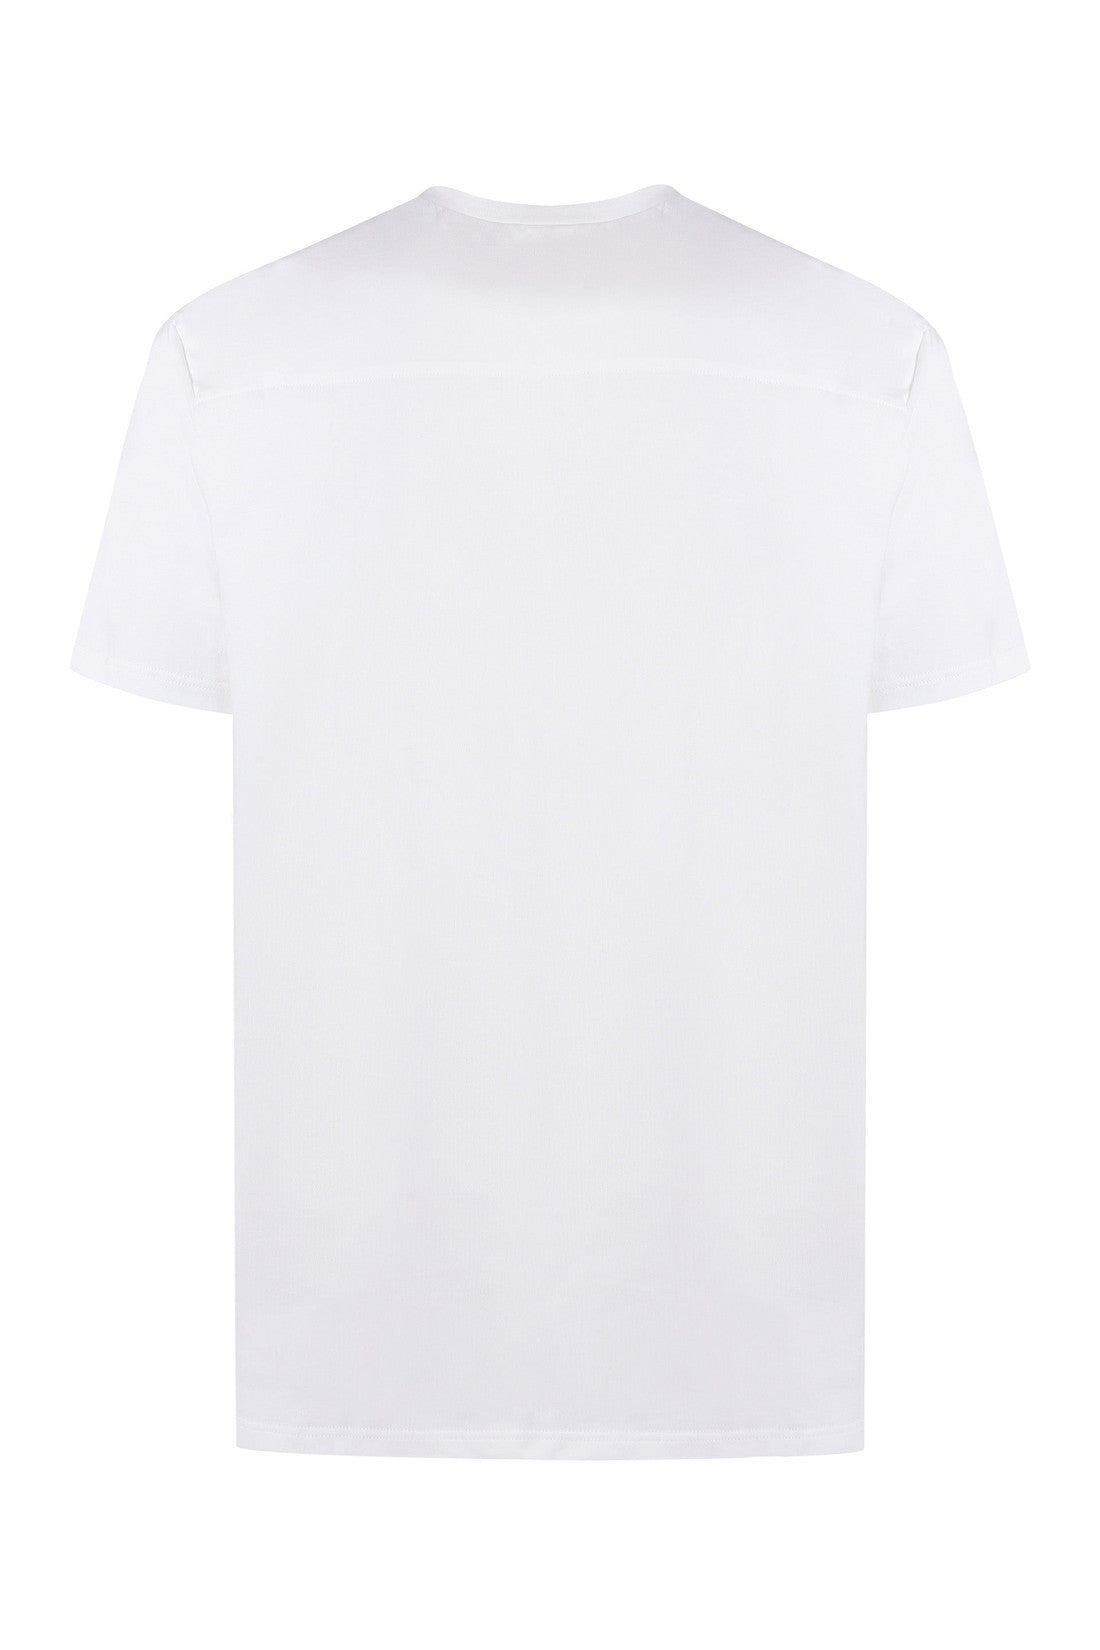 Jil Sander-OUTLET-SALE-Cotton crew-neck T-shirt-ARCHIVIST